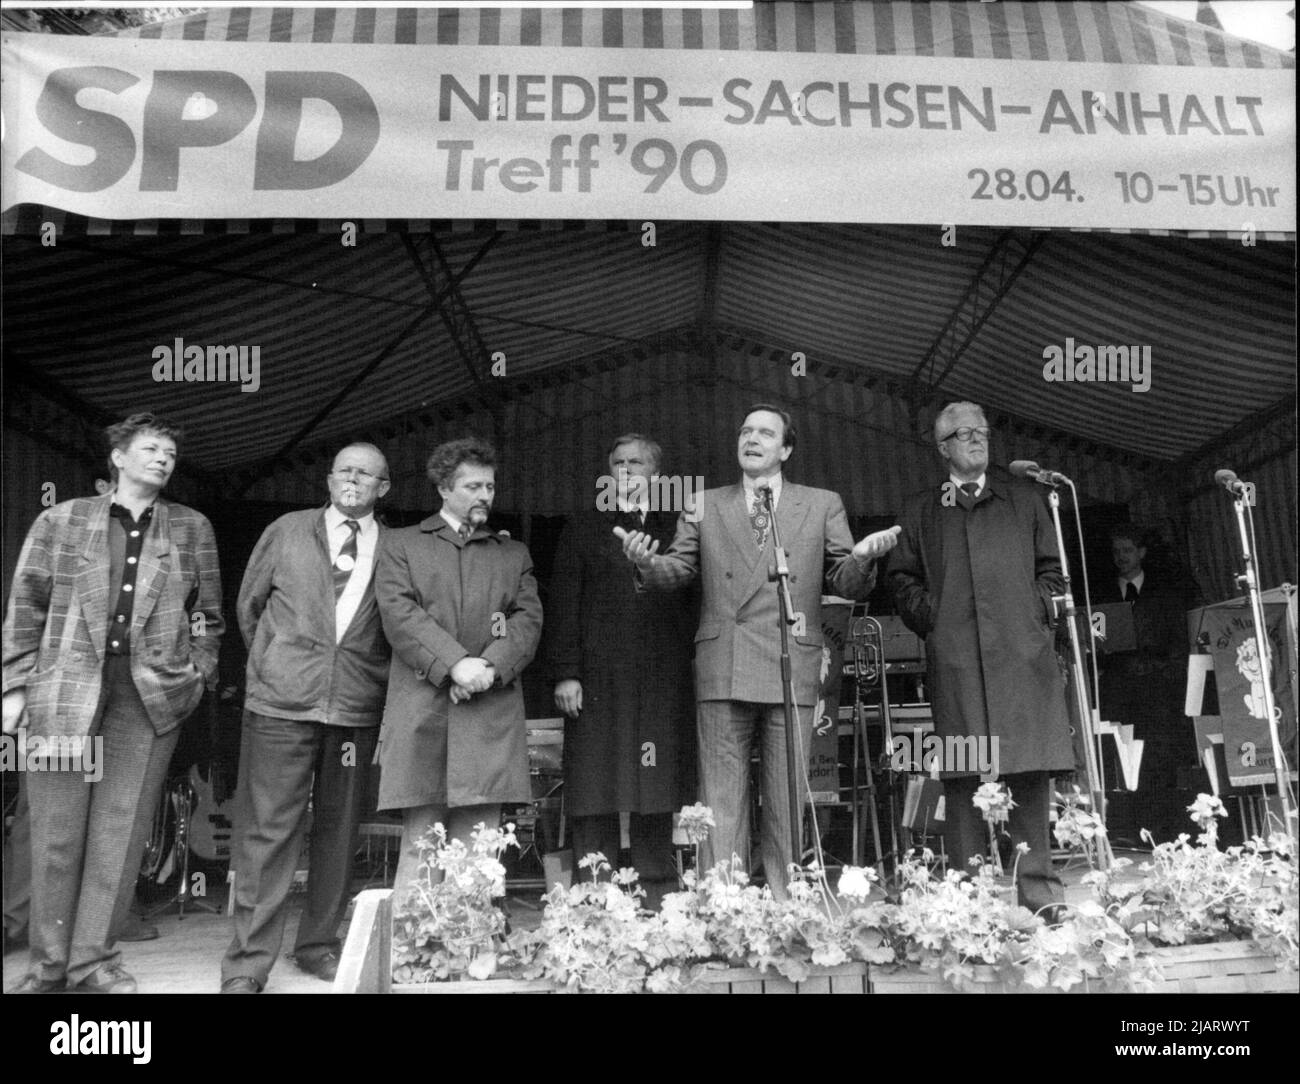 Die Abbildung zeigt den SPD-Spitzenkandidat Gerhard Schröder bei einer Rede zu einer Wahlkampfveranstaltung in Braunschweig im Jahr 1990. Von rechts nach links: Hans-Jochen Vogel, Gerhard Schröder, Gerhard Glogowski und Willi Pohte. Stock Photo